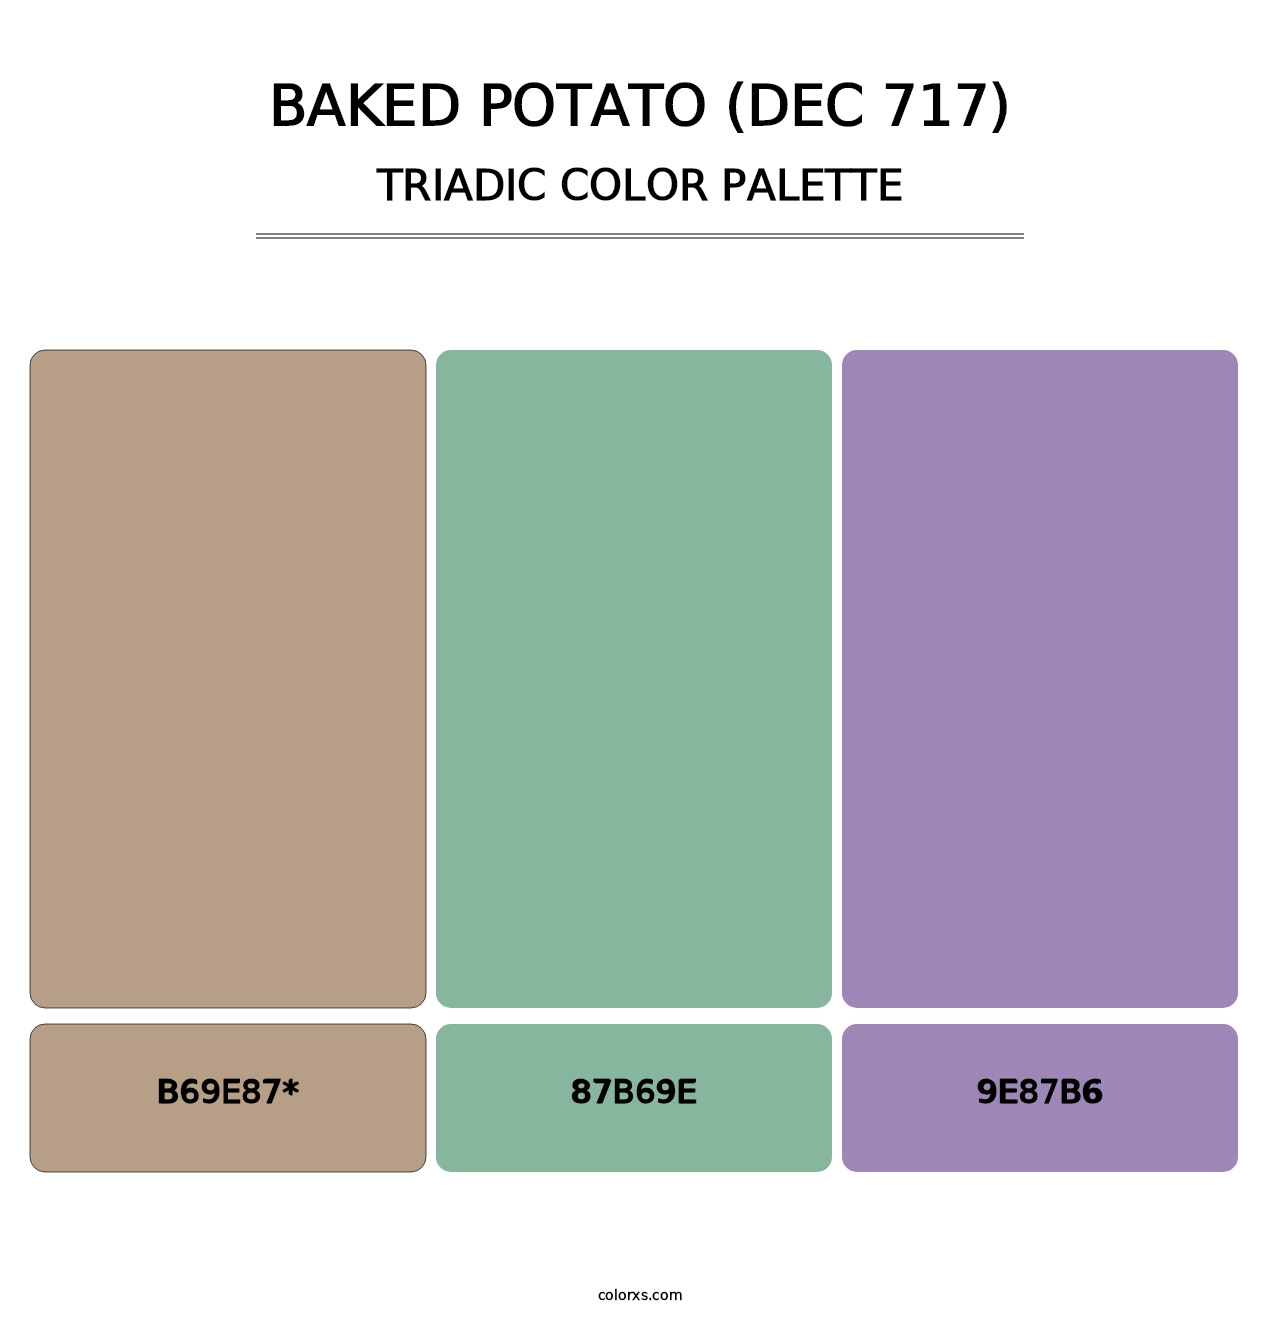 Baked Potato (DEC 717) - Triadic Color Palette